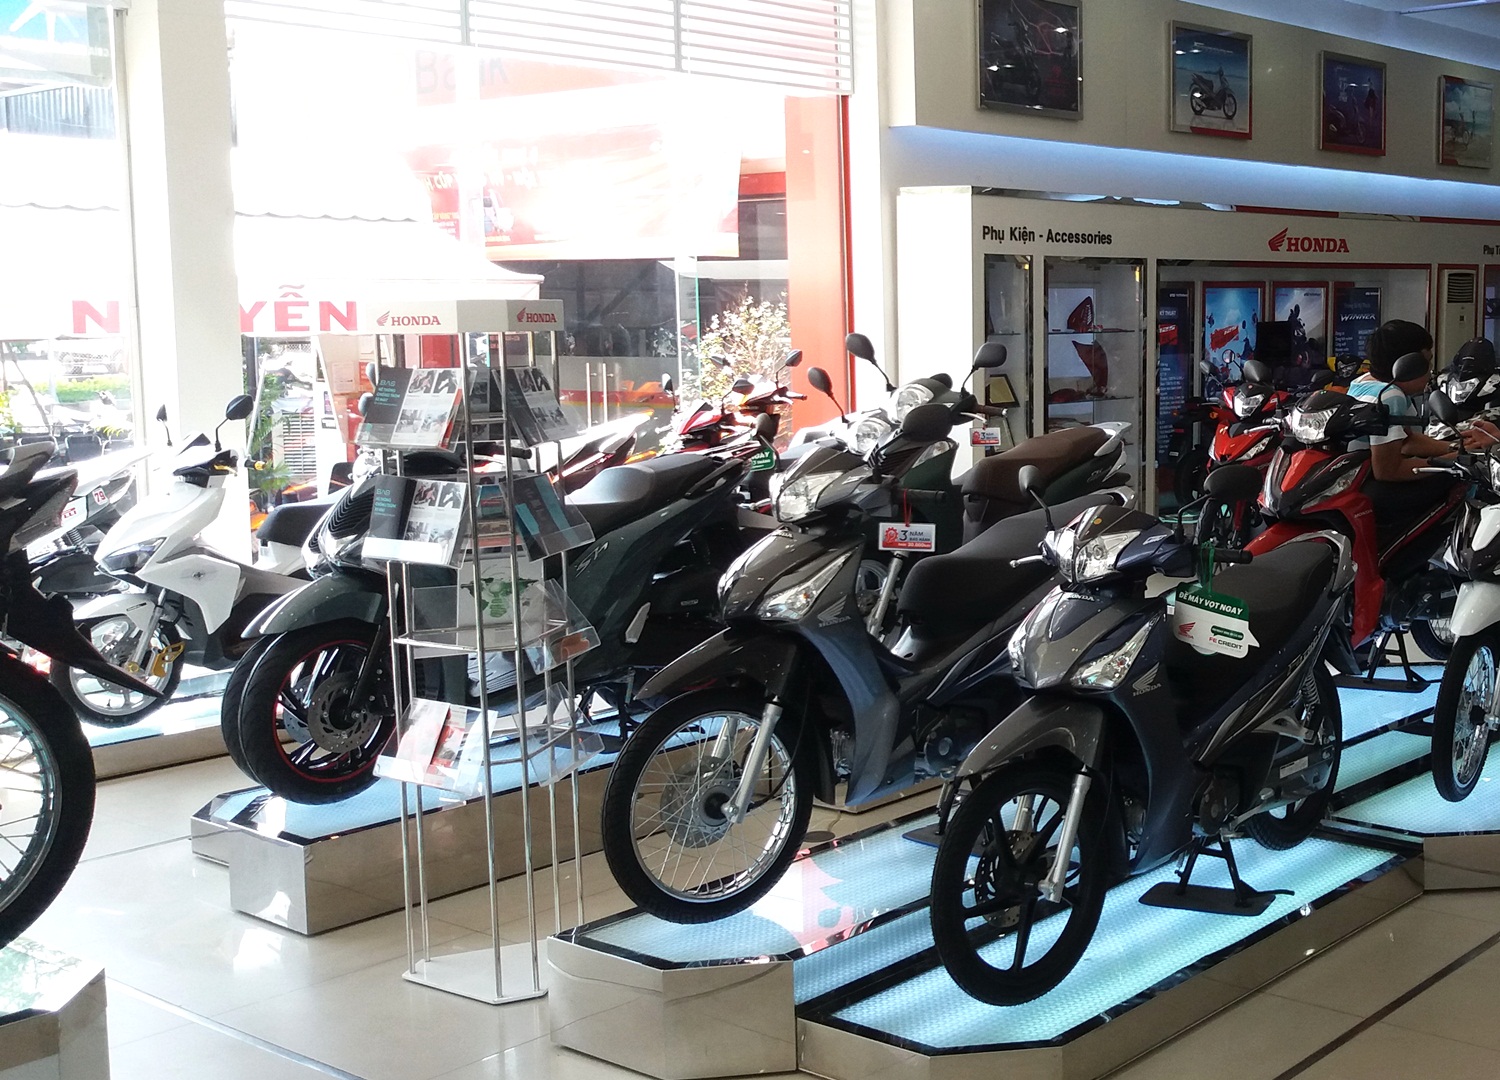 Kinh doanh xe máy Honda ở Việt Nam: Người bán có đang "bóp cổ" người mua?